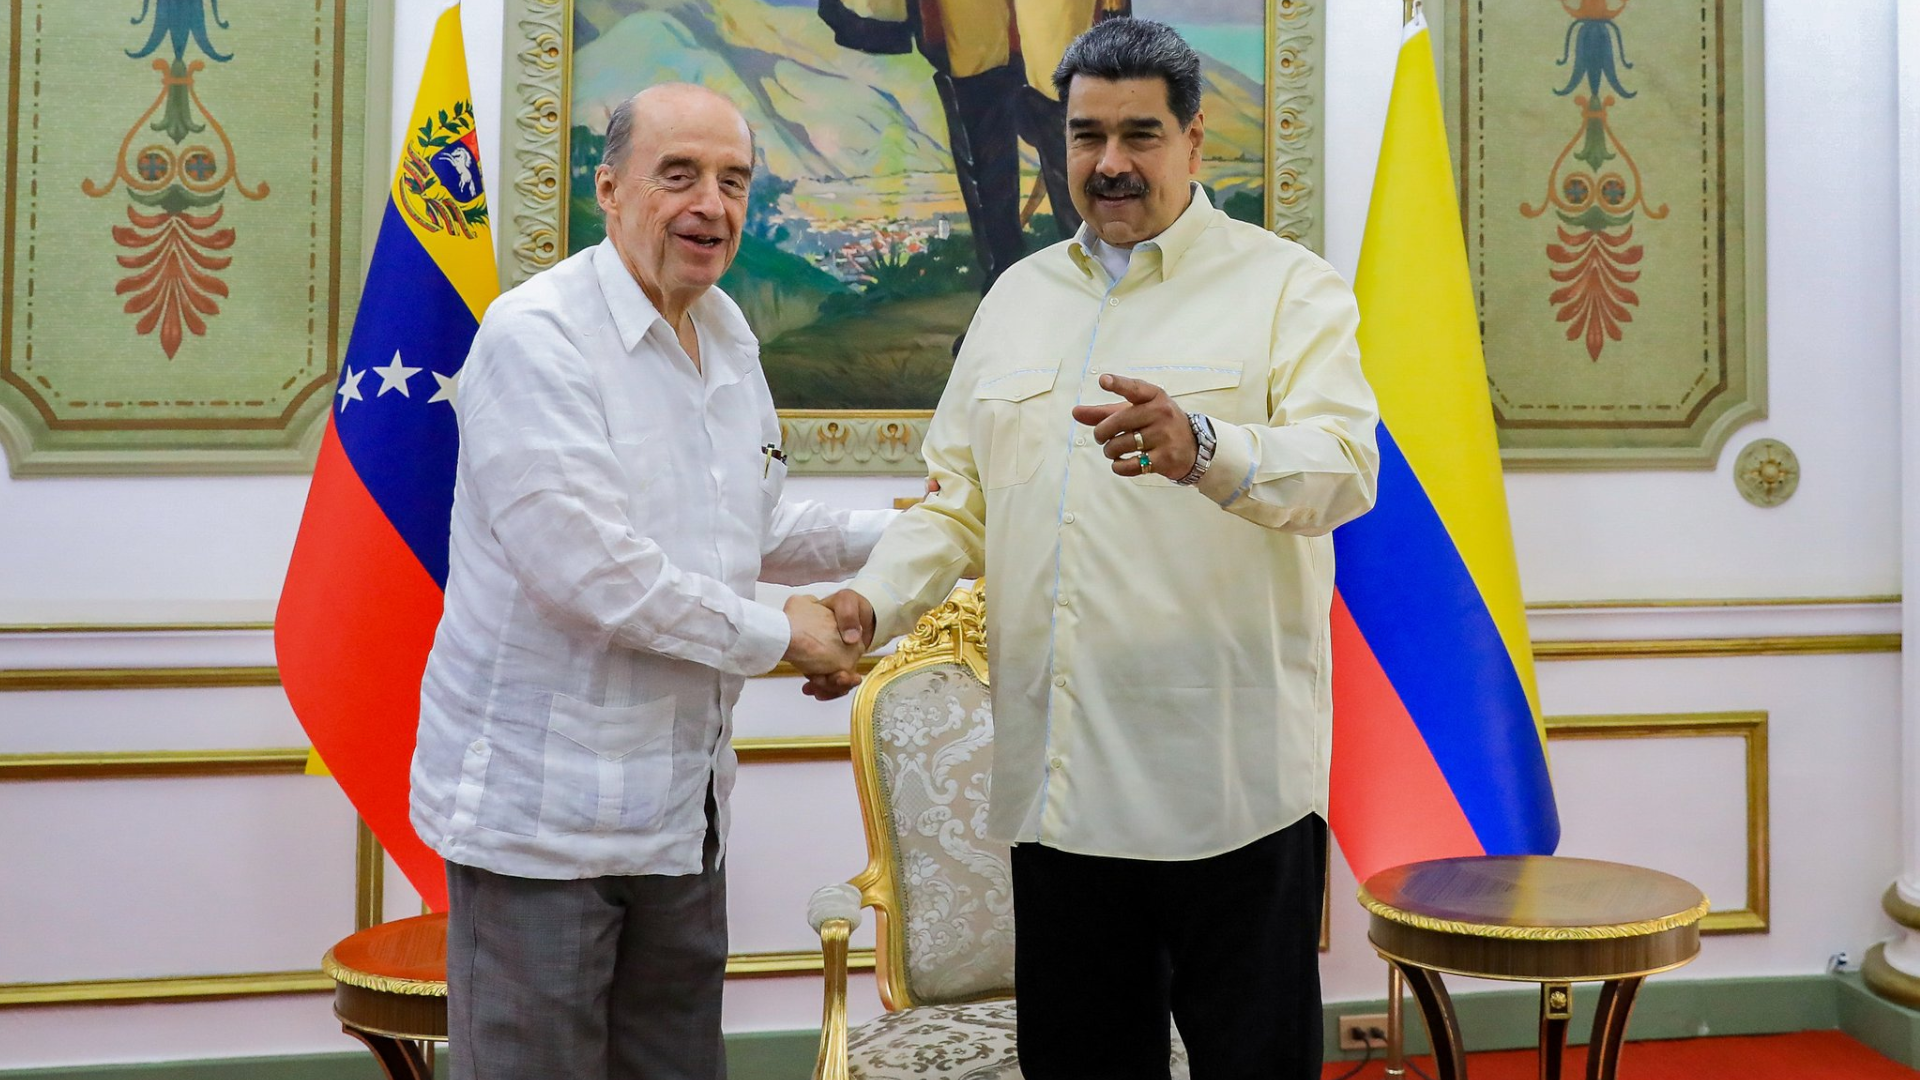 El canciller colombiano, Álvaro Leyva, se reunió nuevamente con el jefe del régimen en Venezuela, Nicolás Maduro. (Twitter Nicolás Maduro)